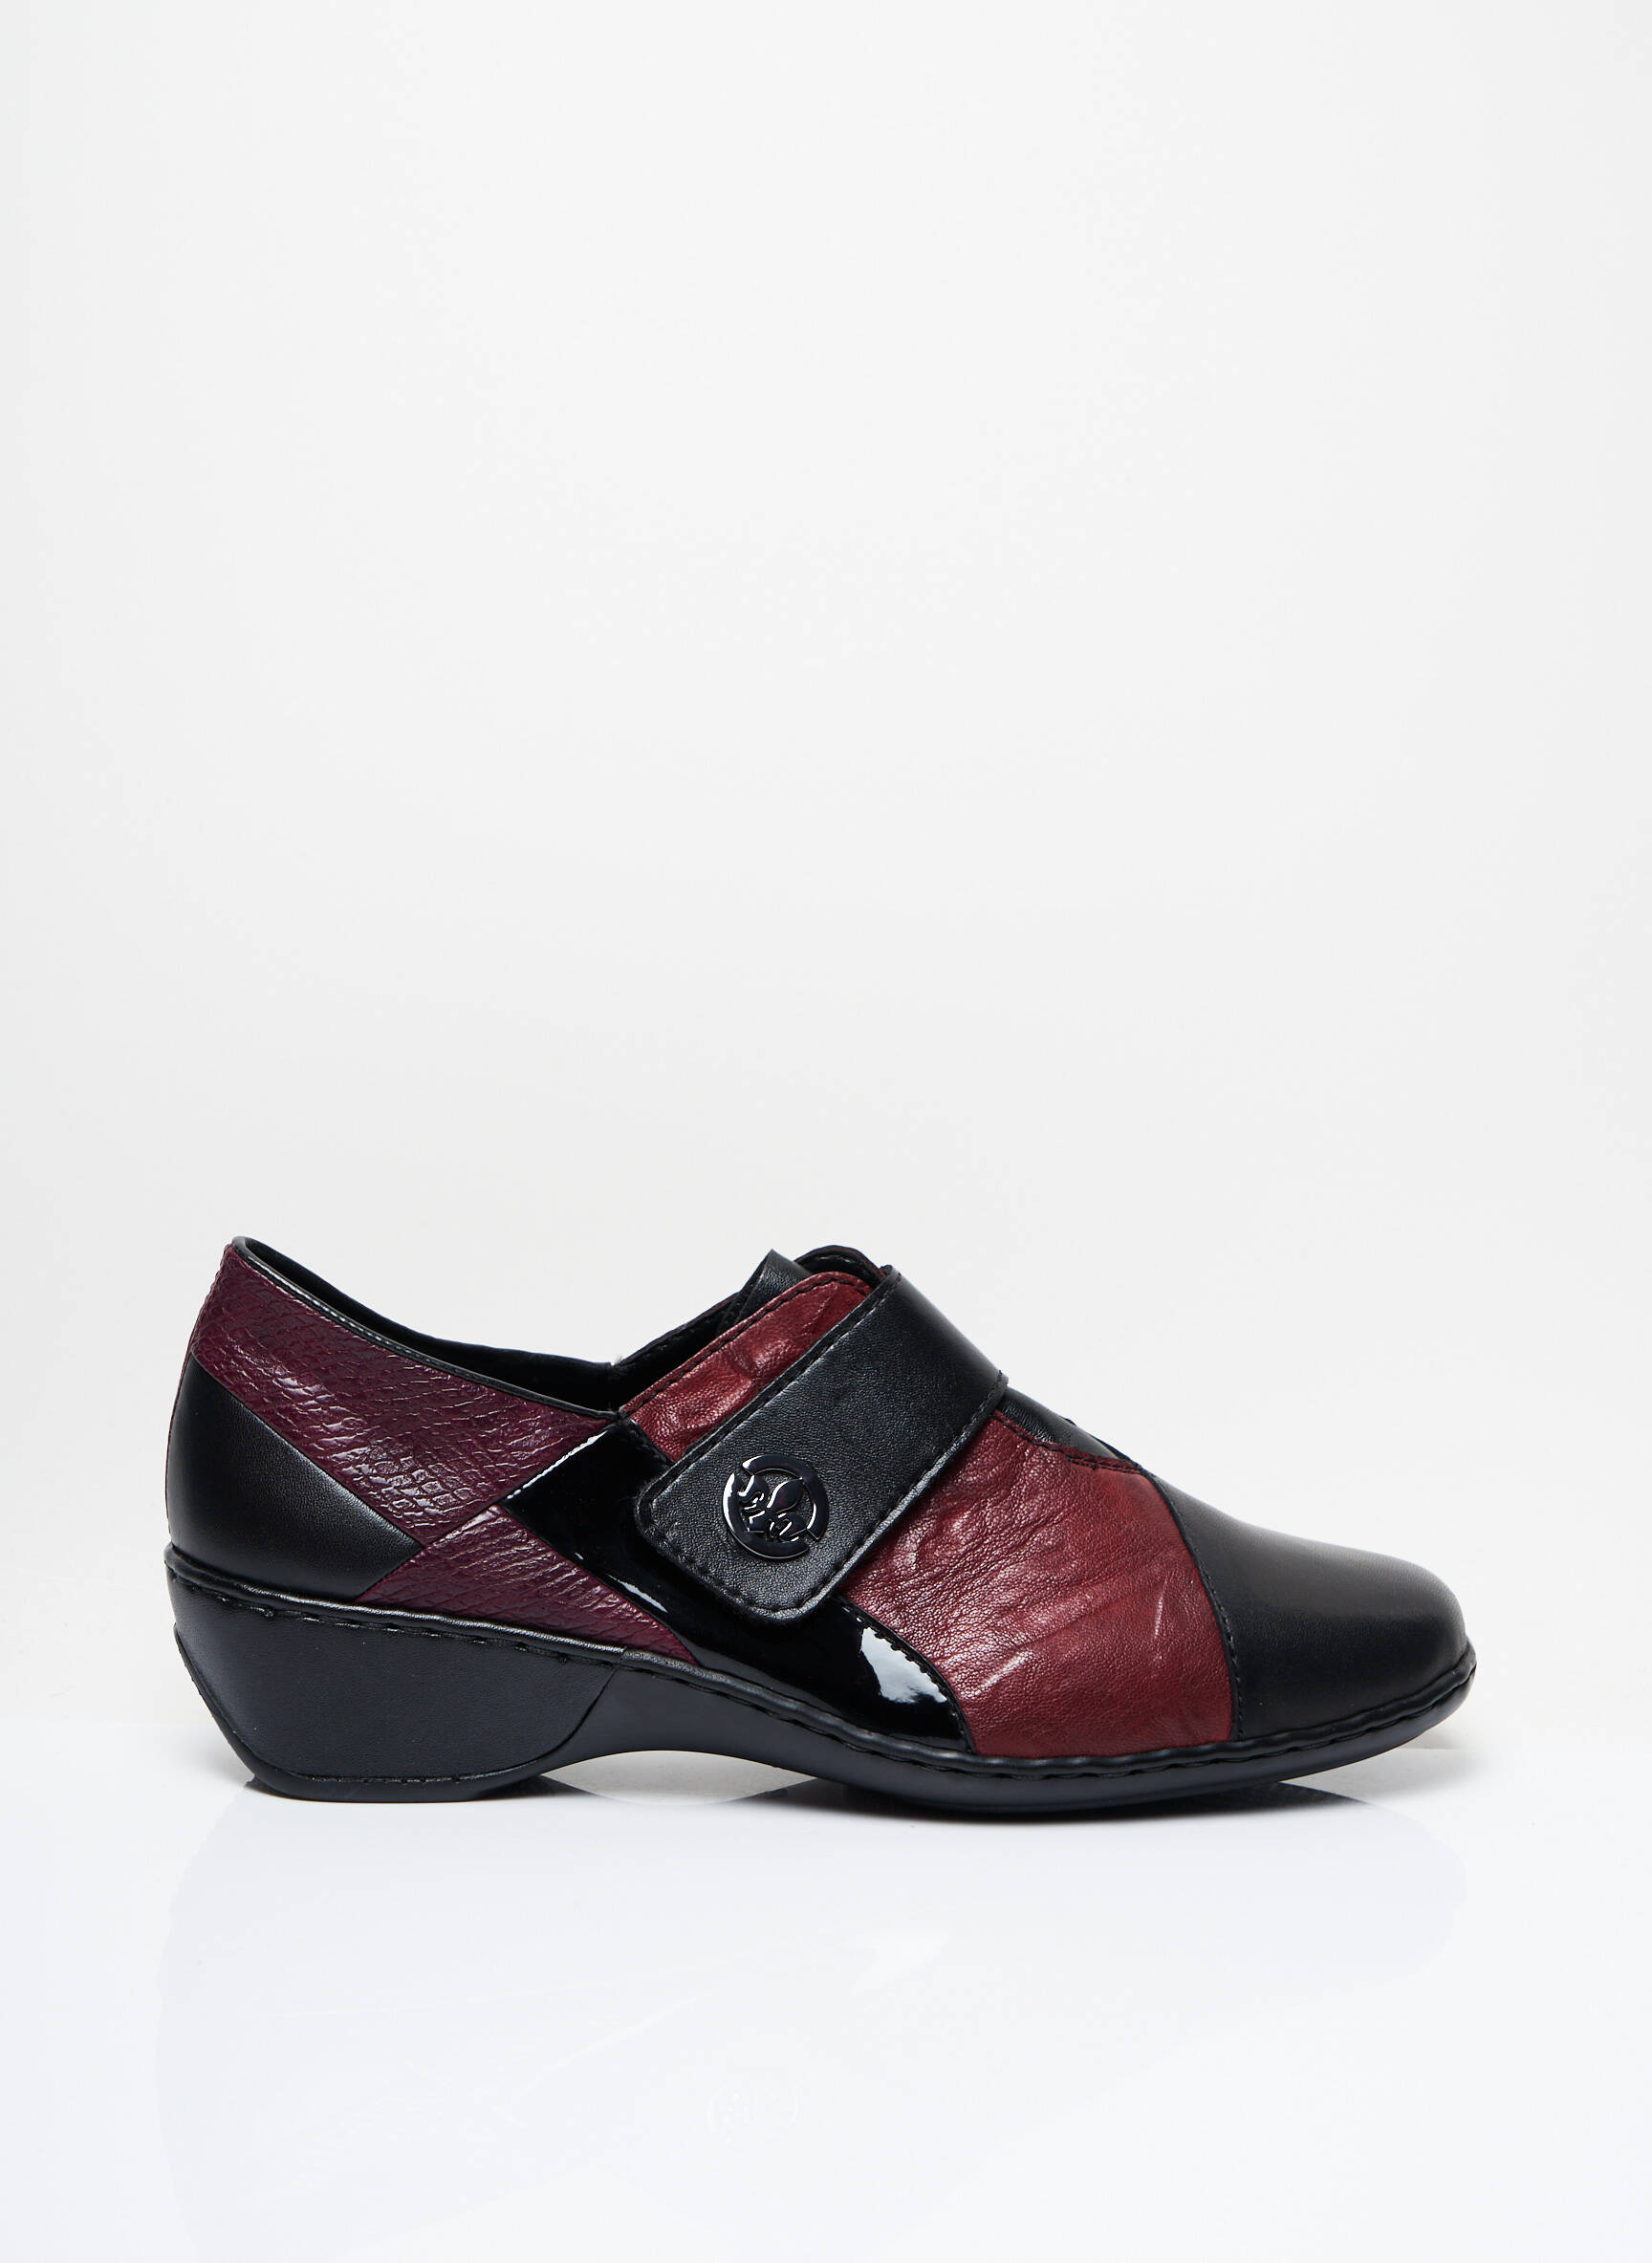 Rieker Chaussures Confort Femme De Couleur Noir 2074422-noir00 - Modz